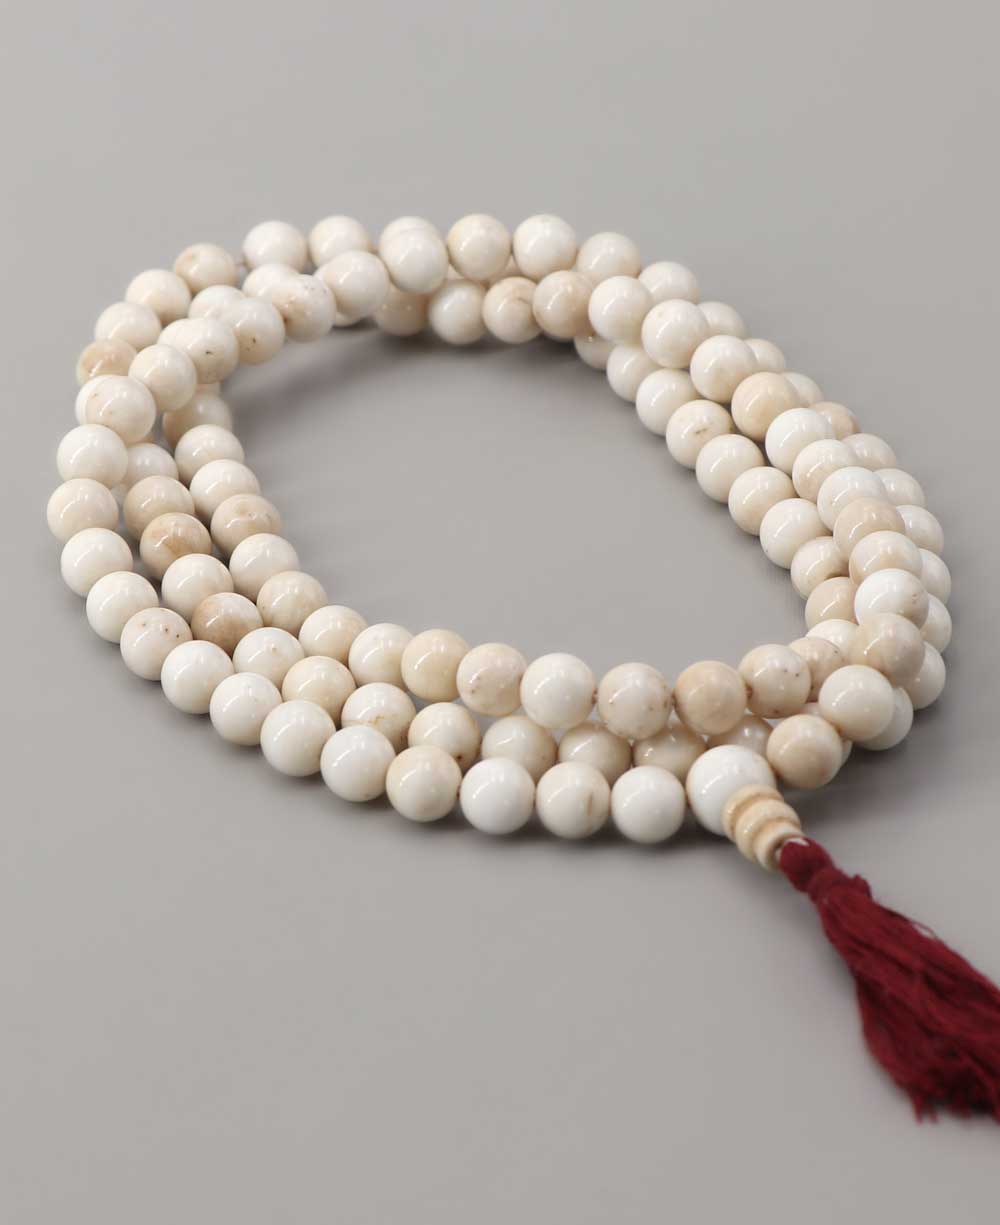 Conch Shell Meditation Mala, Nepal - Prayer Beads